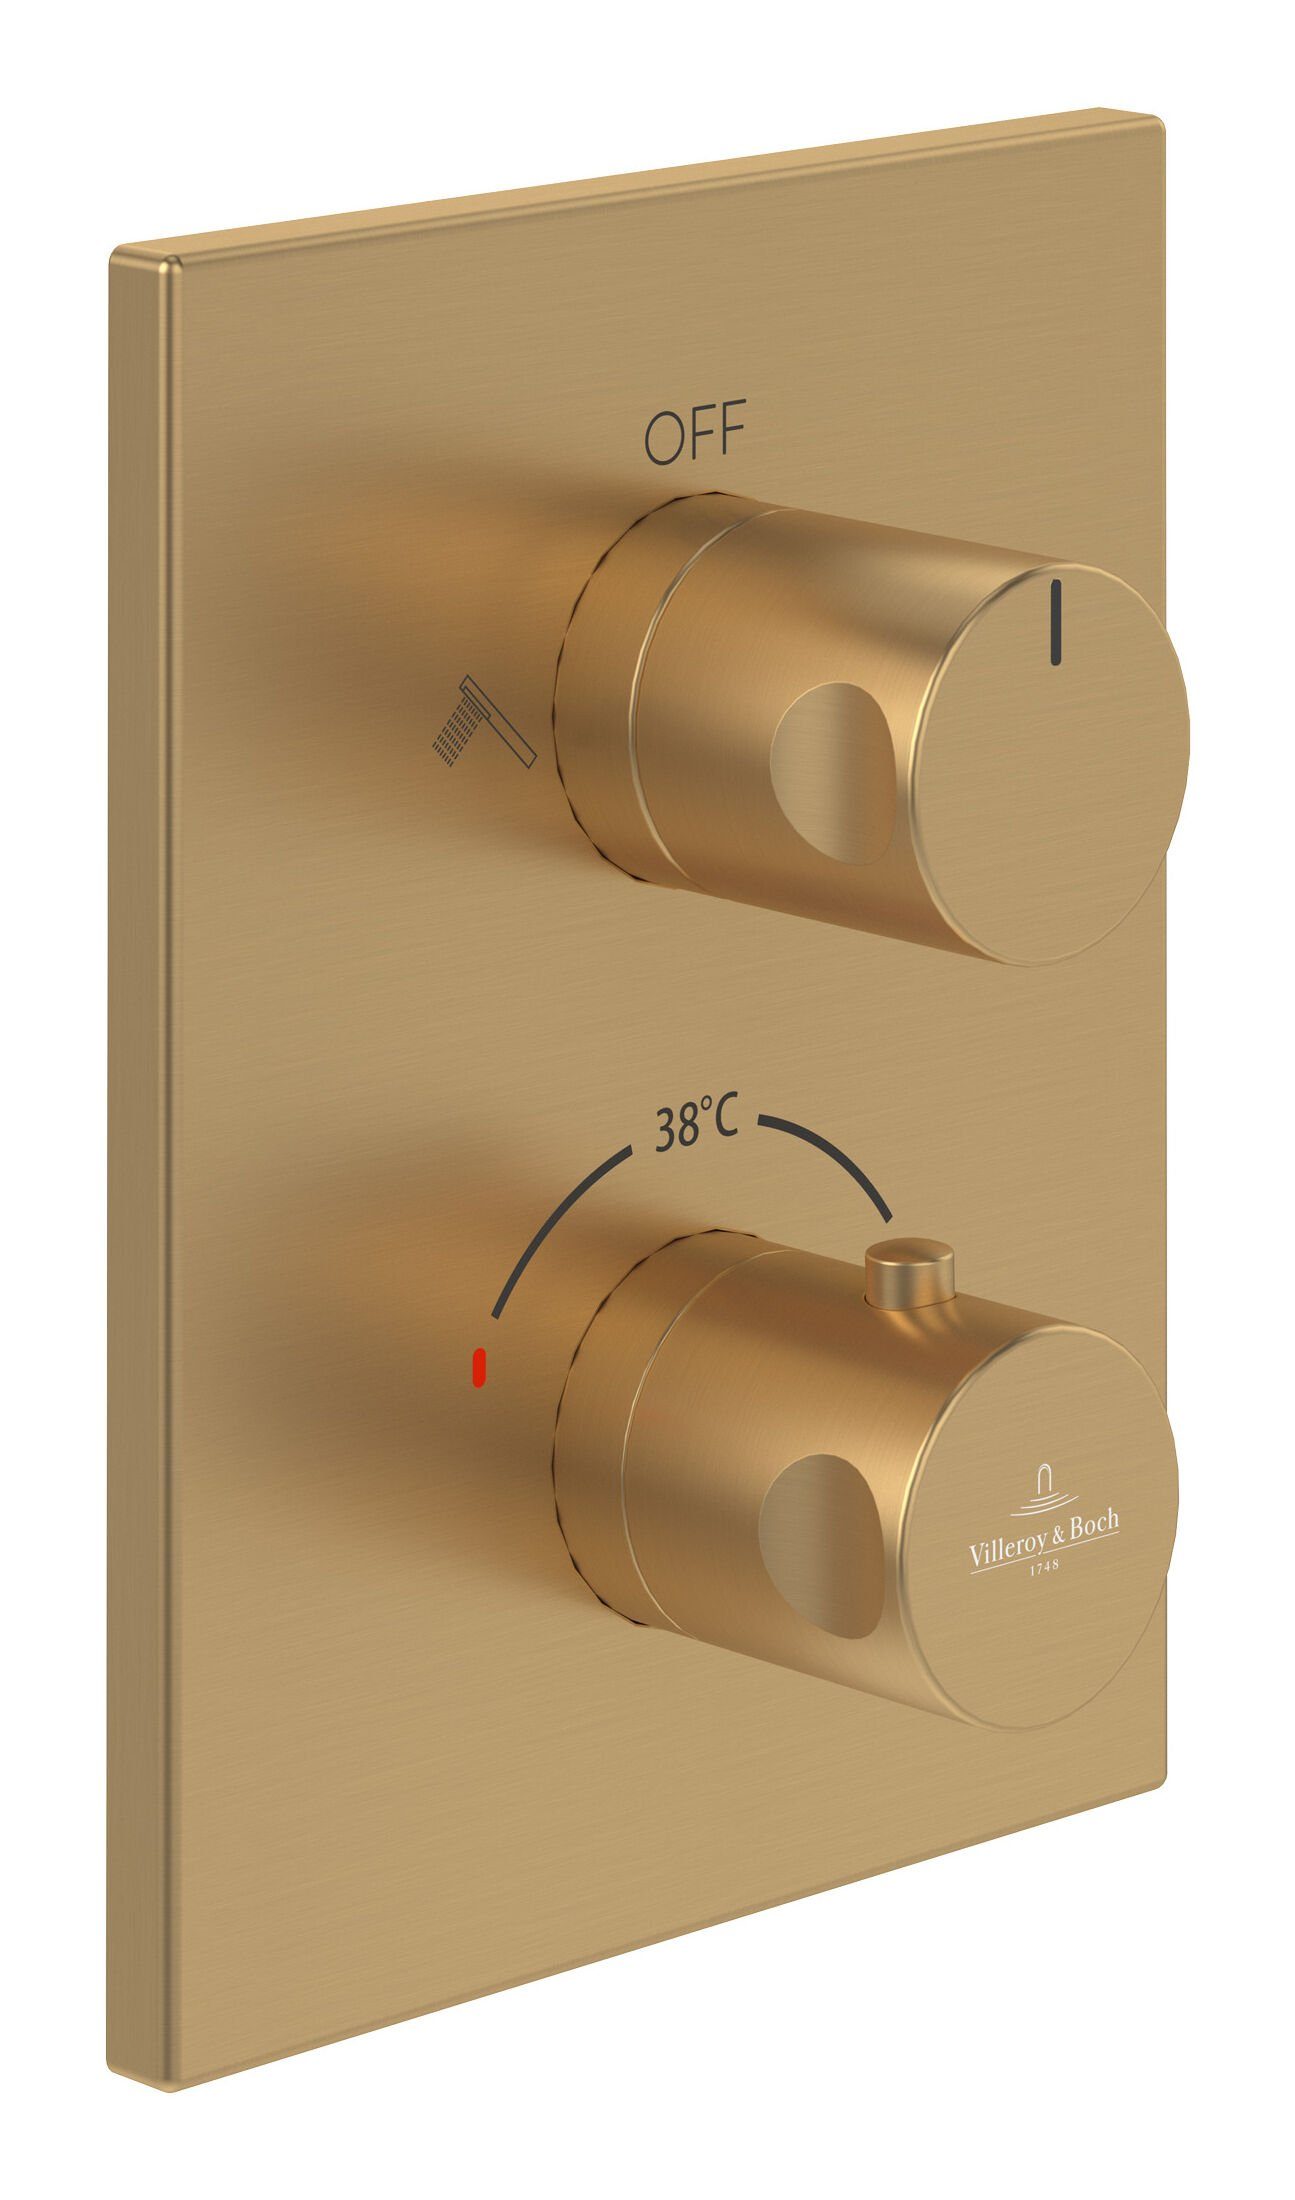 Umsteller Universal Unterputz-Thermostat, Brushed Boch Gold Villeroy Unterputzarmatur Fittings Eckig, & & mit Taps -